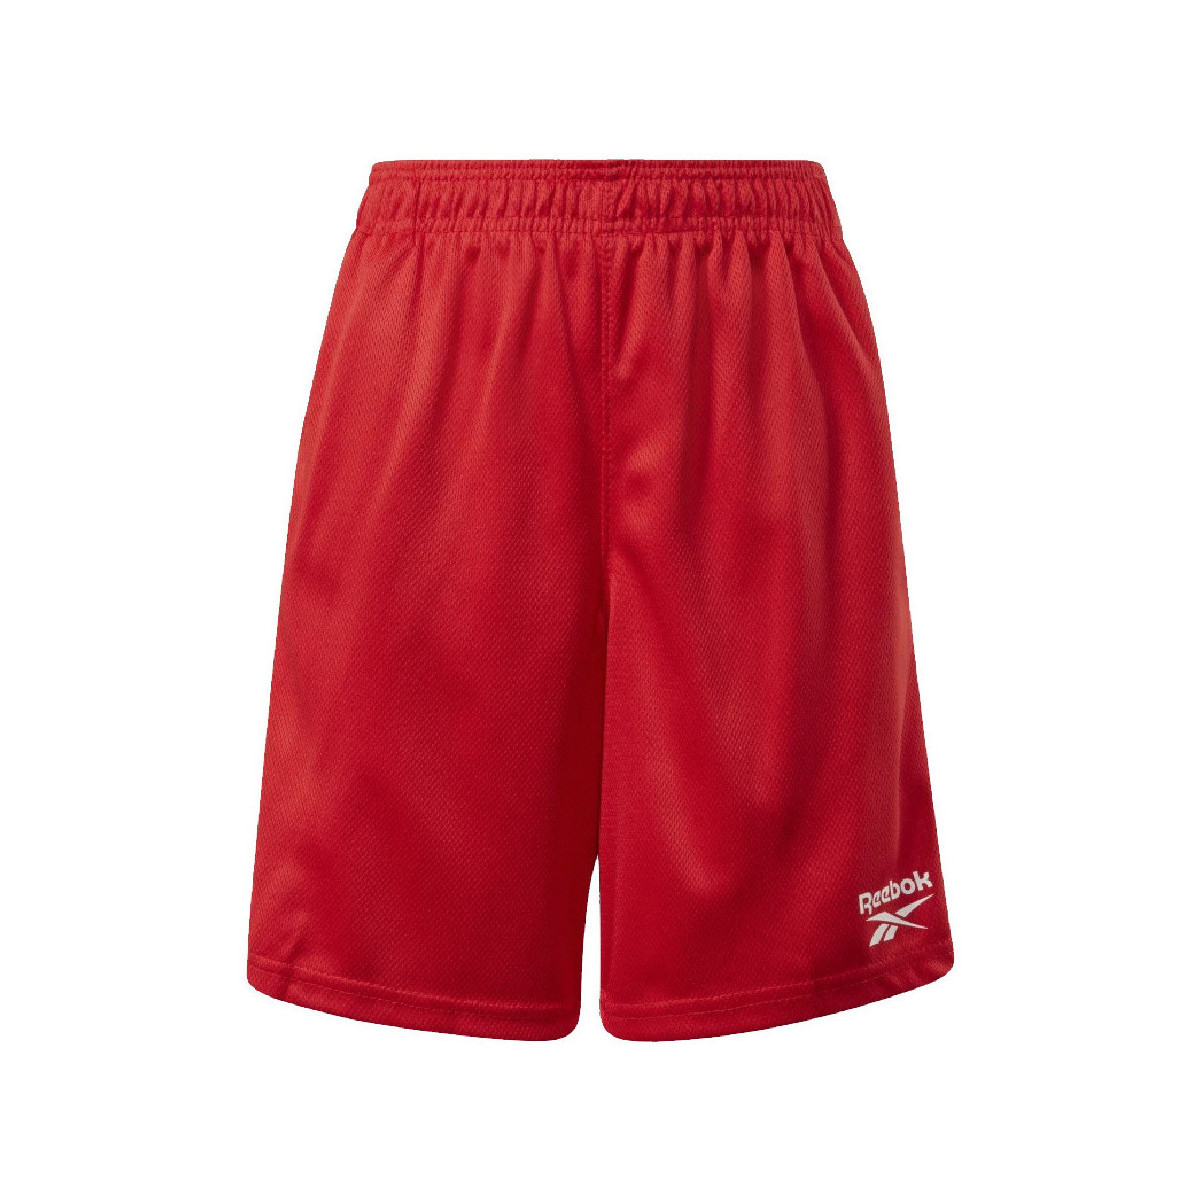 Textiel Jongens Korte broeken / Bermuda's Reebok Sport  Rood